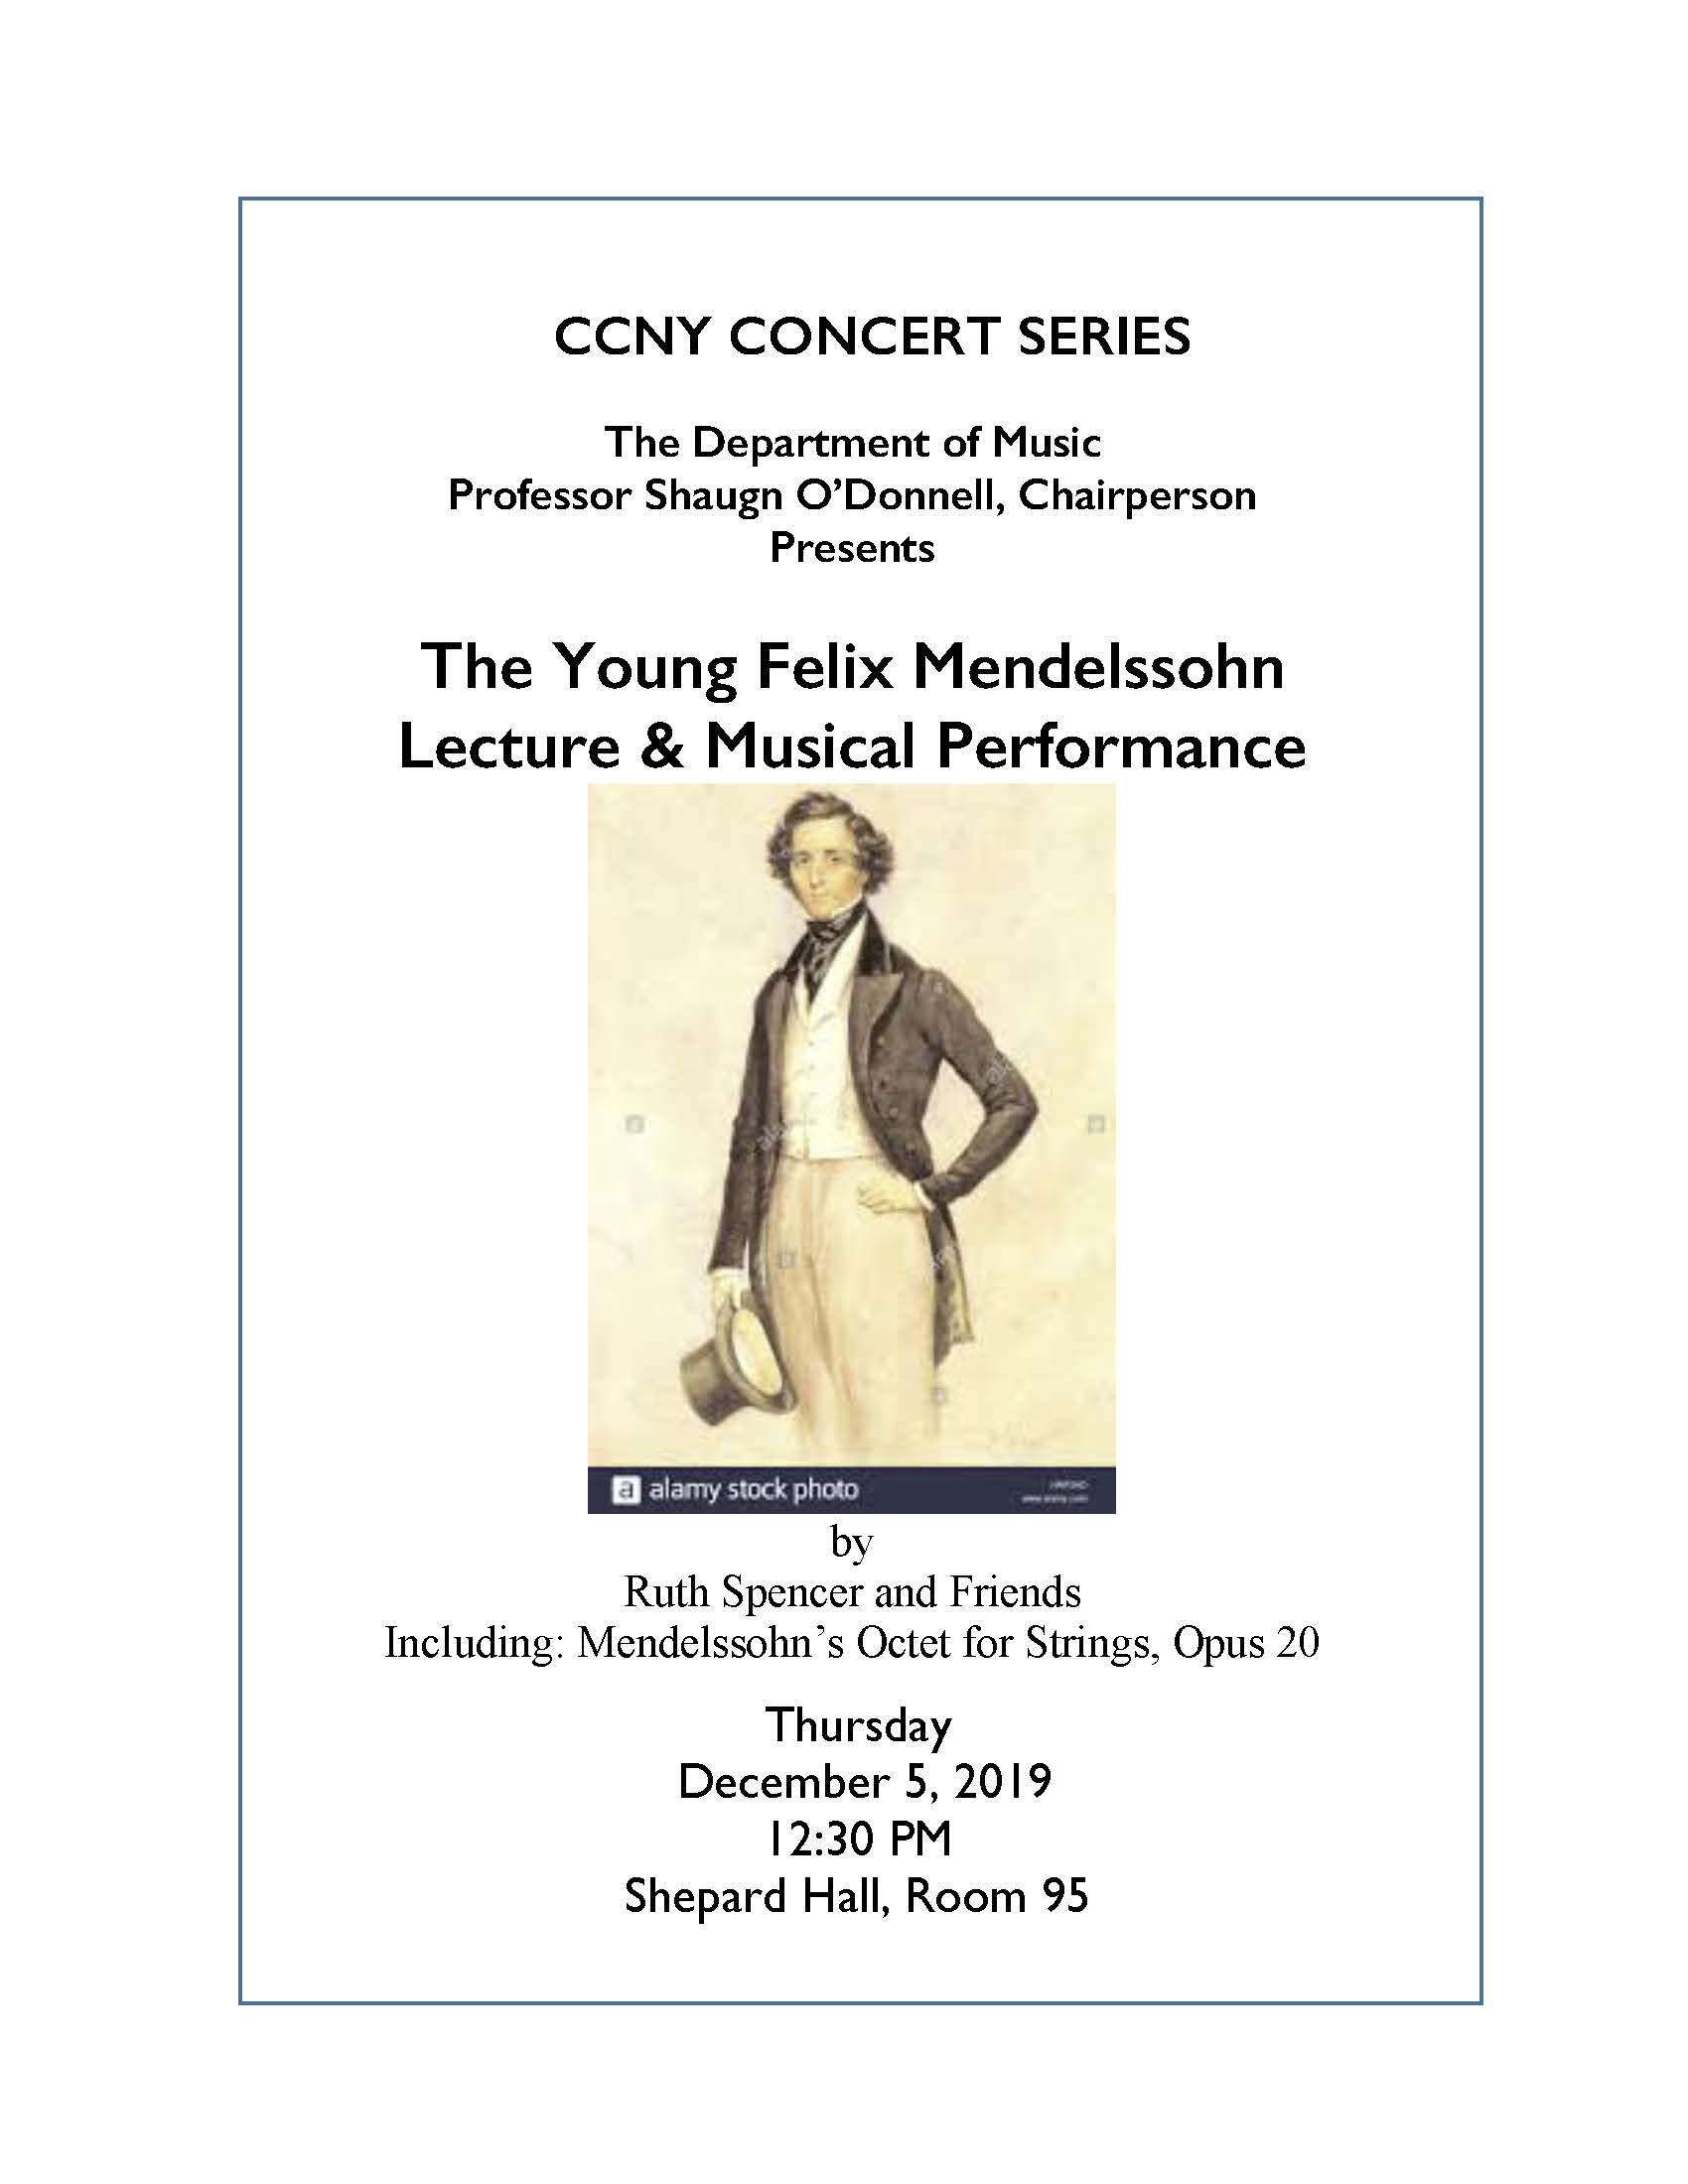 The Young Felix Mendelssohn